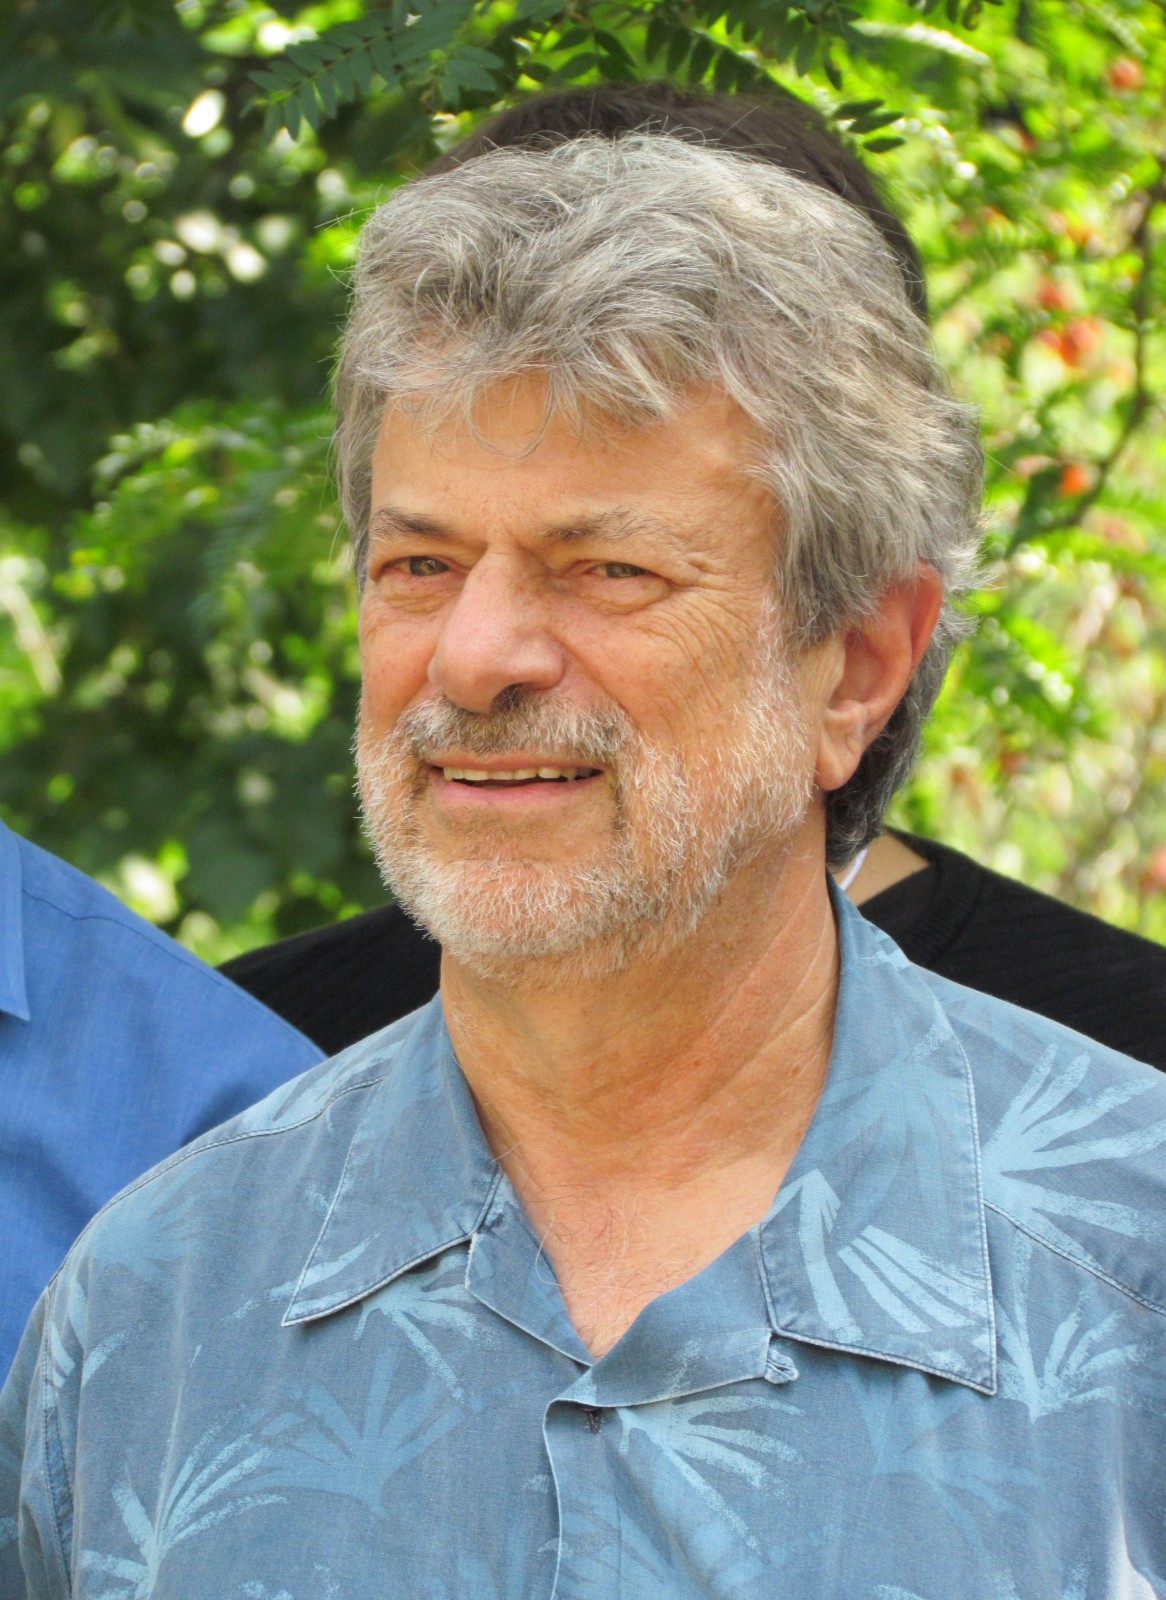 David Sankoff at "Models and Algorithms for Genome Evolution" in 2013, Bromont, Quebec.